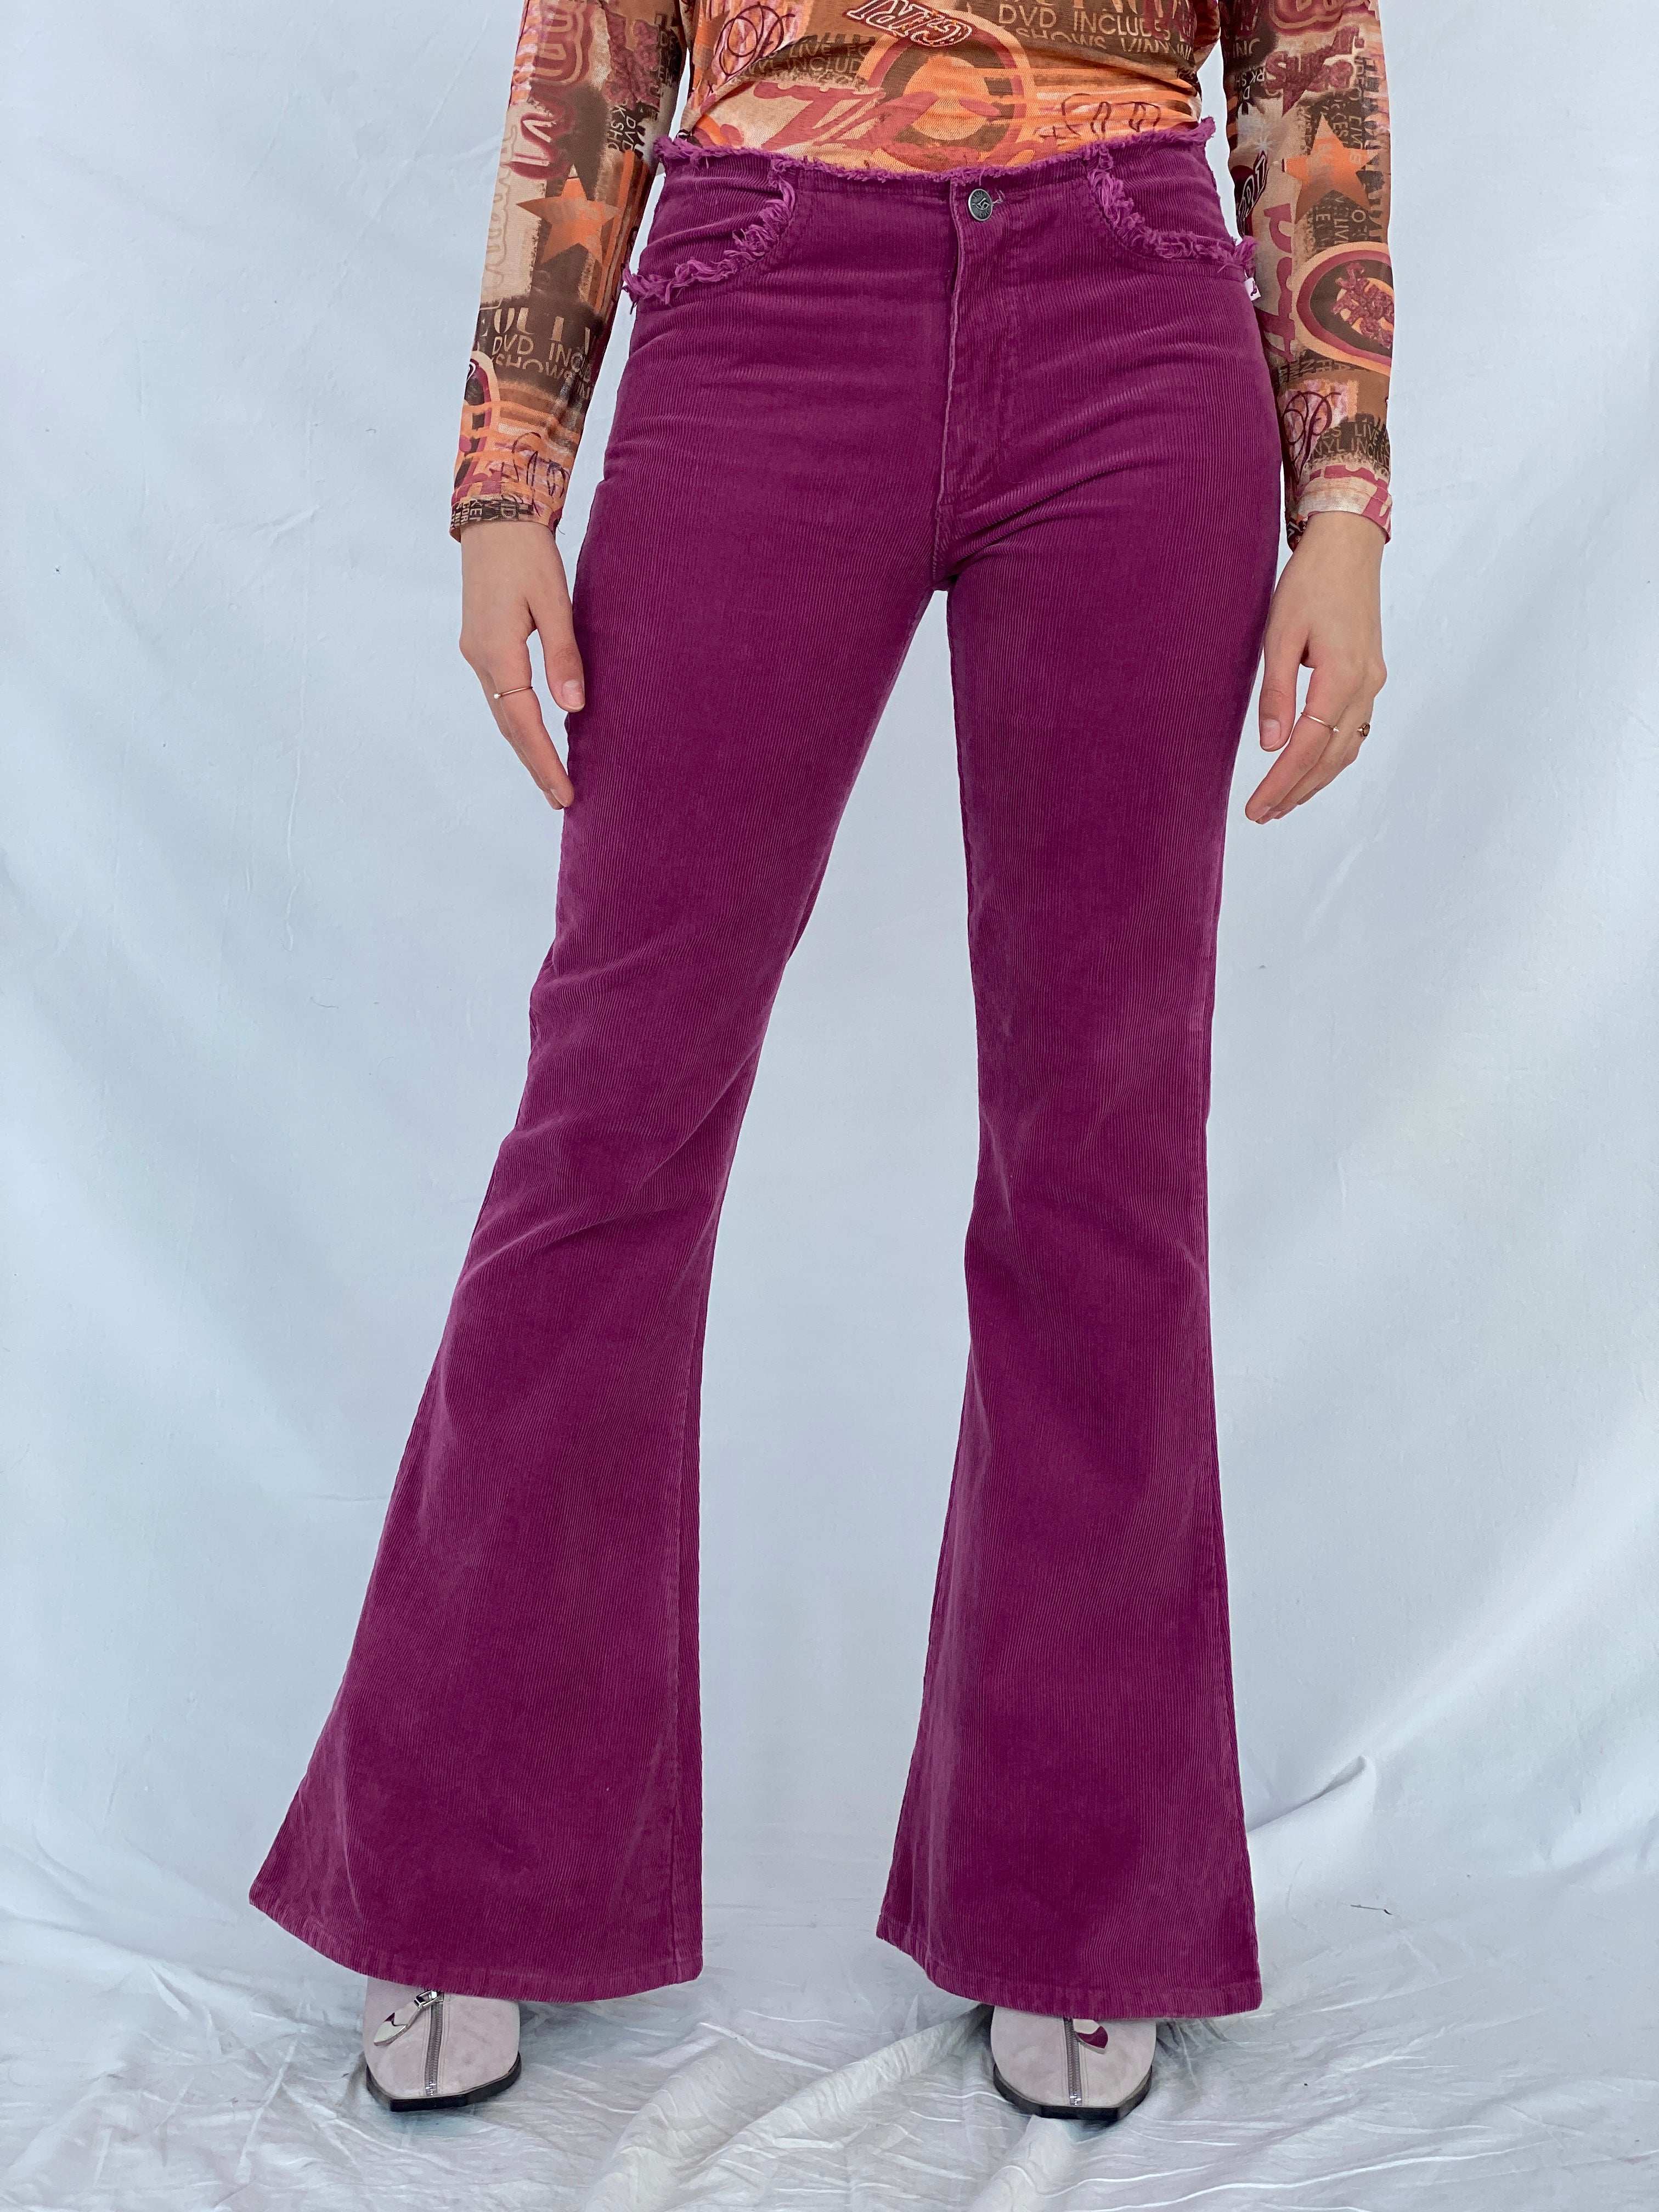 Vintage Y2K Lost Girl Flare Pants - Balagan Vintage 00s, corduroy pants, Mira, NEW IN